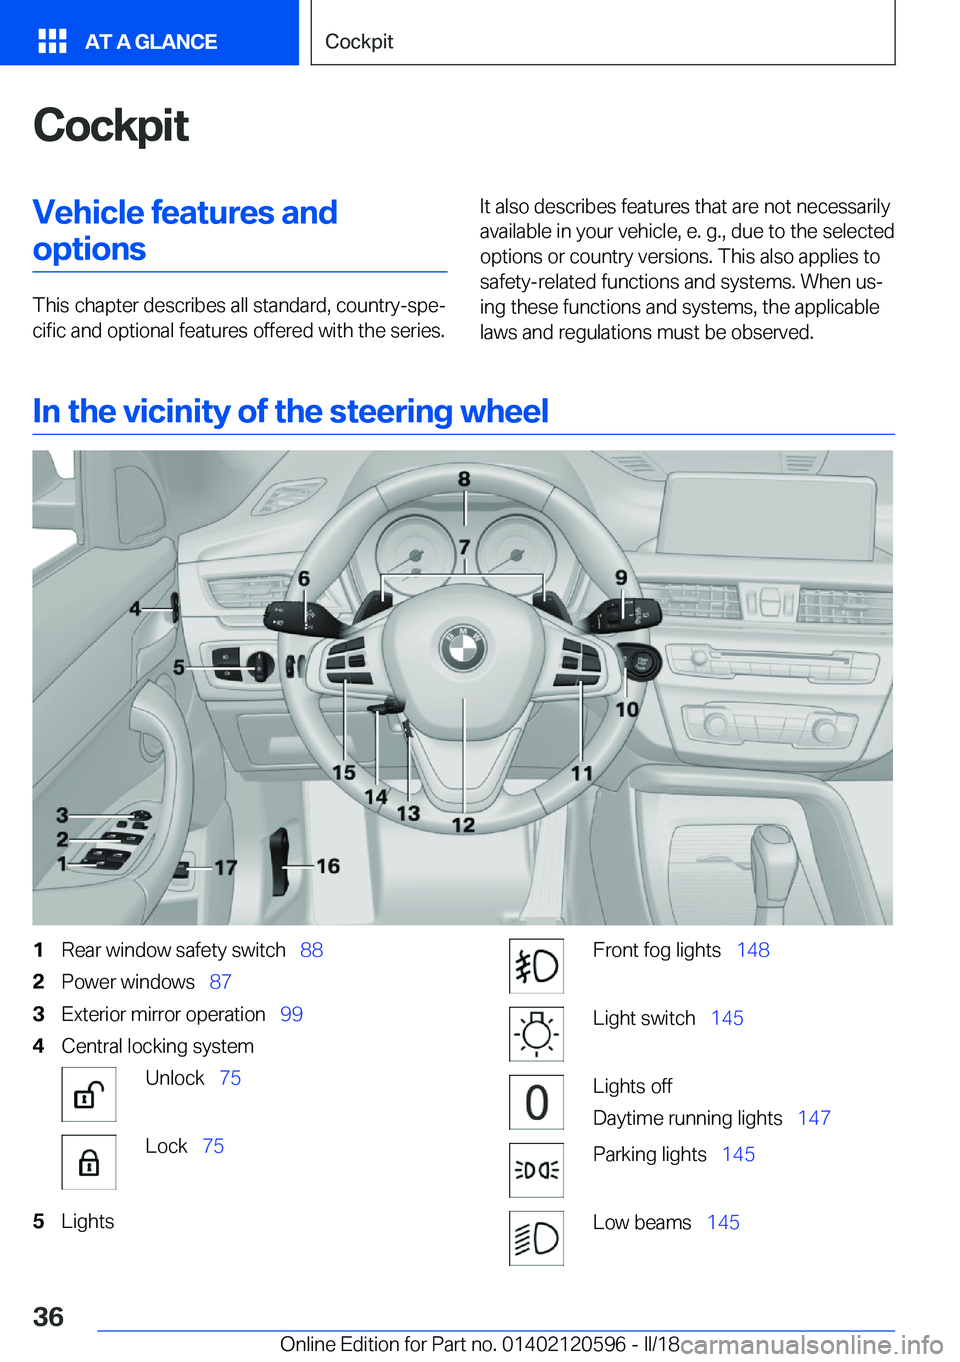 BMW X1 2018 Owners Guide �C�o�c�k�p�i�t�V�e�h�i�c�l�e��f�e�a�t�u�r�e�s��a�n�d�o�p�t�i�o�n�s
�T�h�i�s� �c�h�a�p�t�e�r� �d�e�s�c�r�i�b�e�s� �a�l�l� �s�t�a�n�d�a�r�d�,� �c�o�u�n�t�r�y�-�s�p�ej�c�i�f�i�c� �a�n�d� �o�p�t�i�o�n�